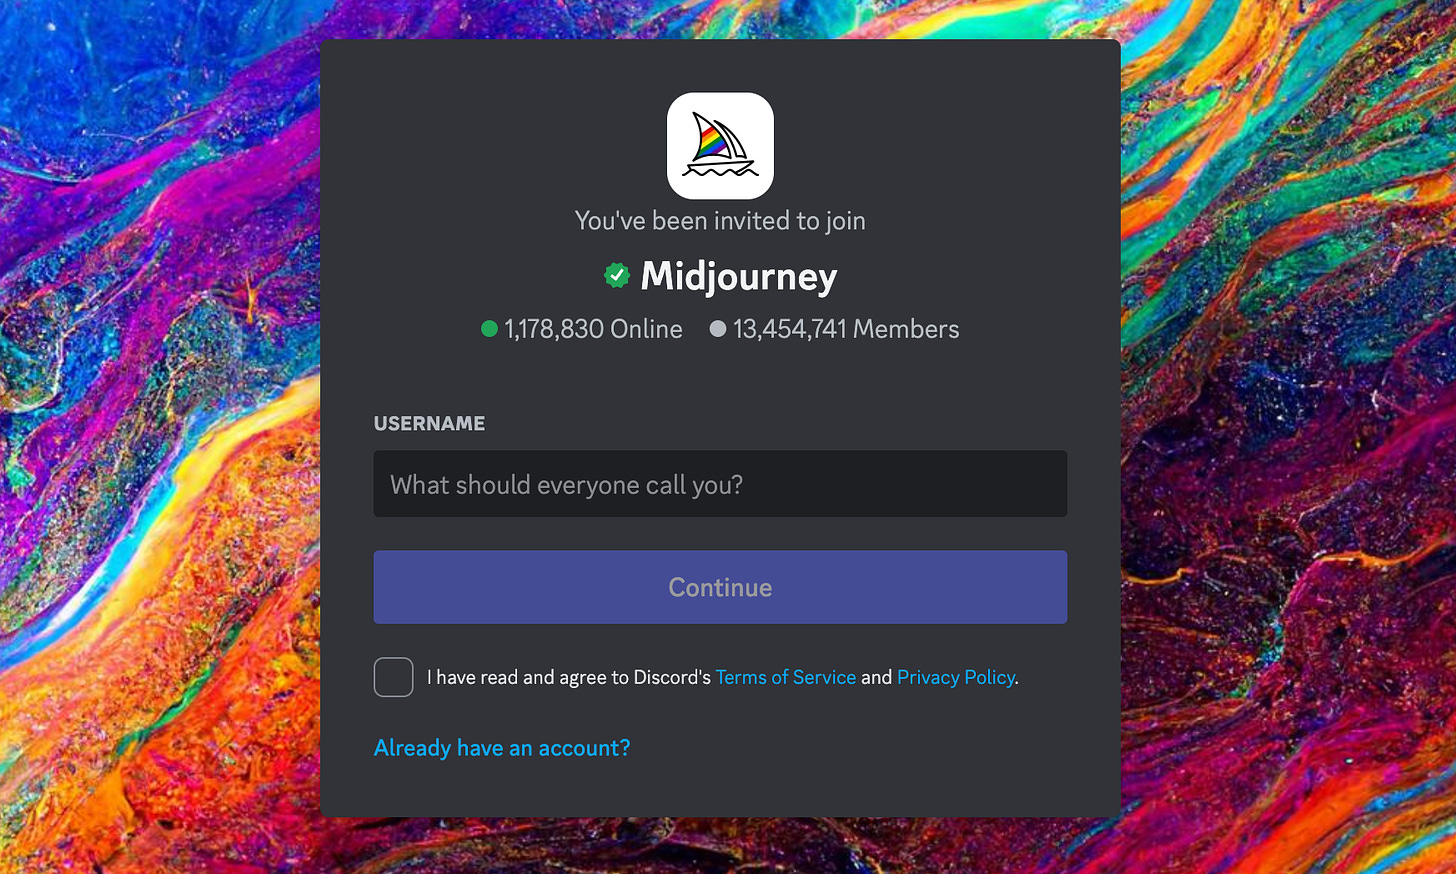 The Midjourney Discord invite